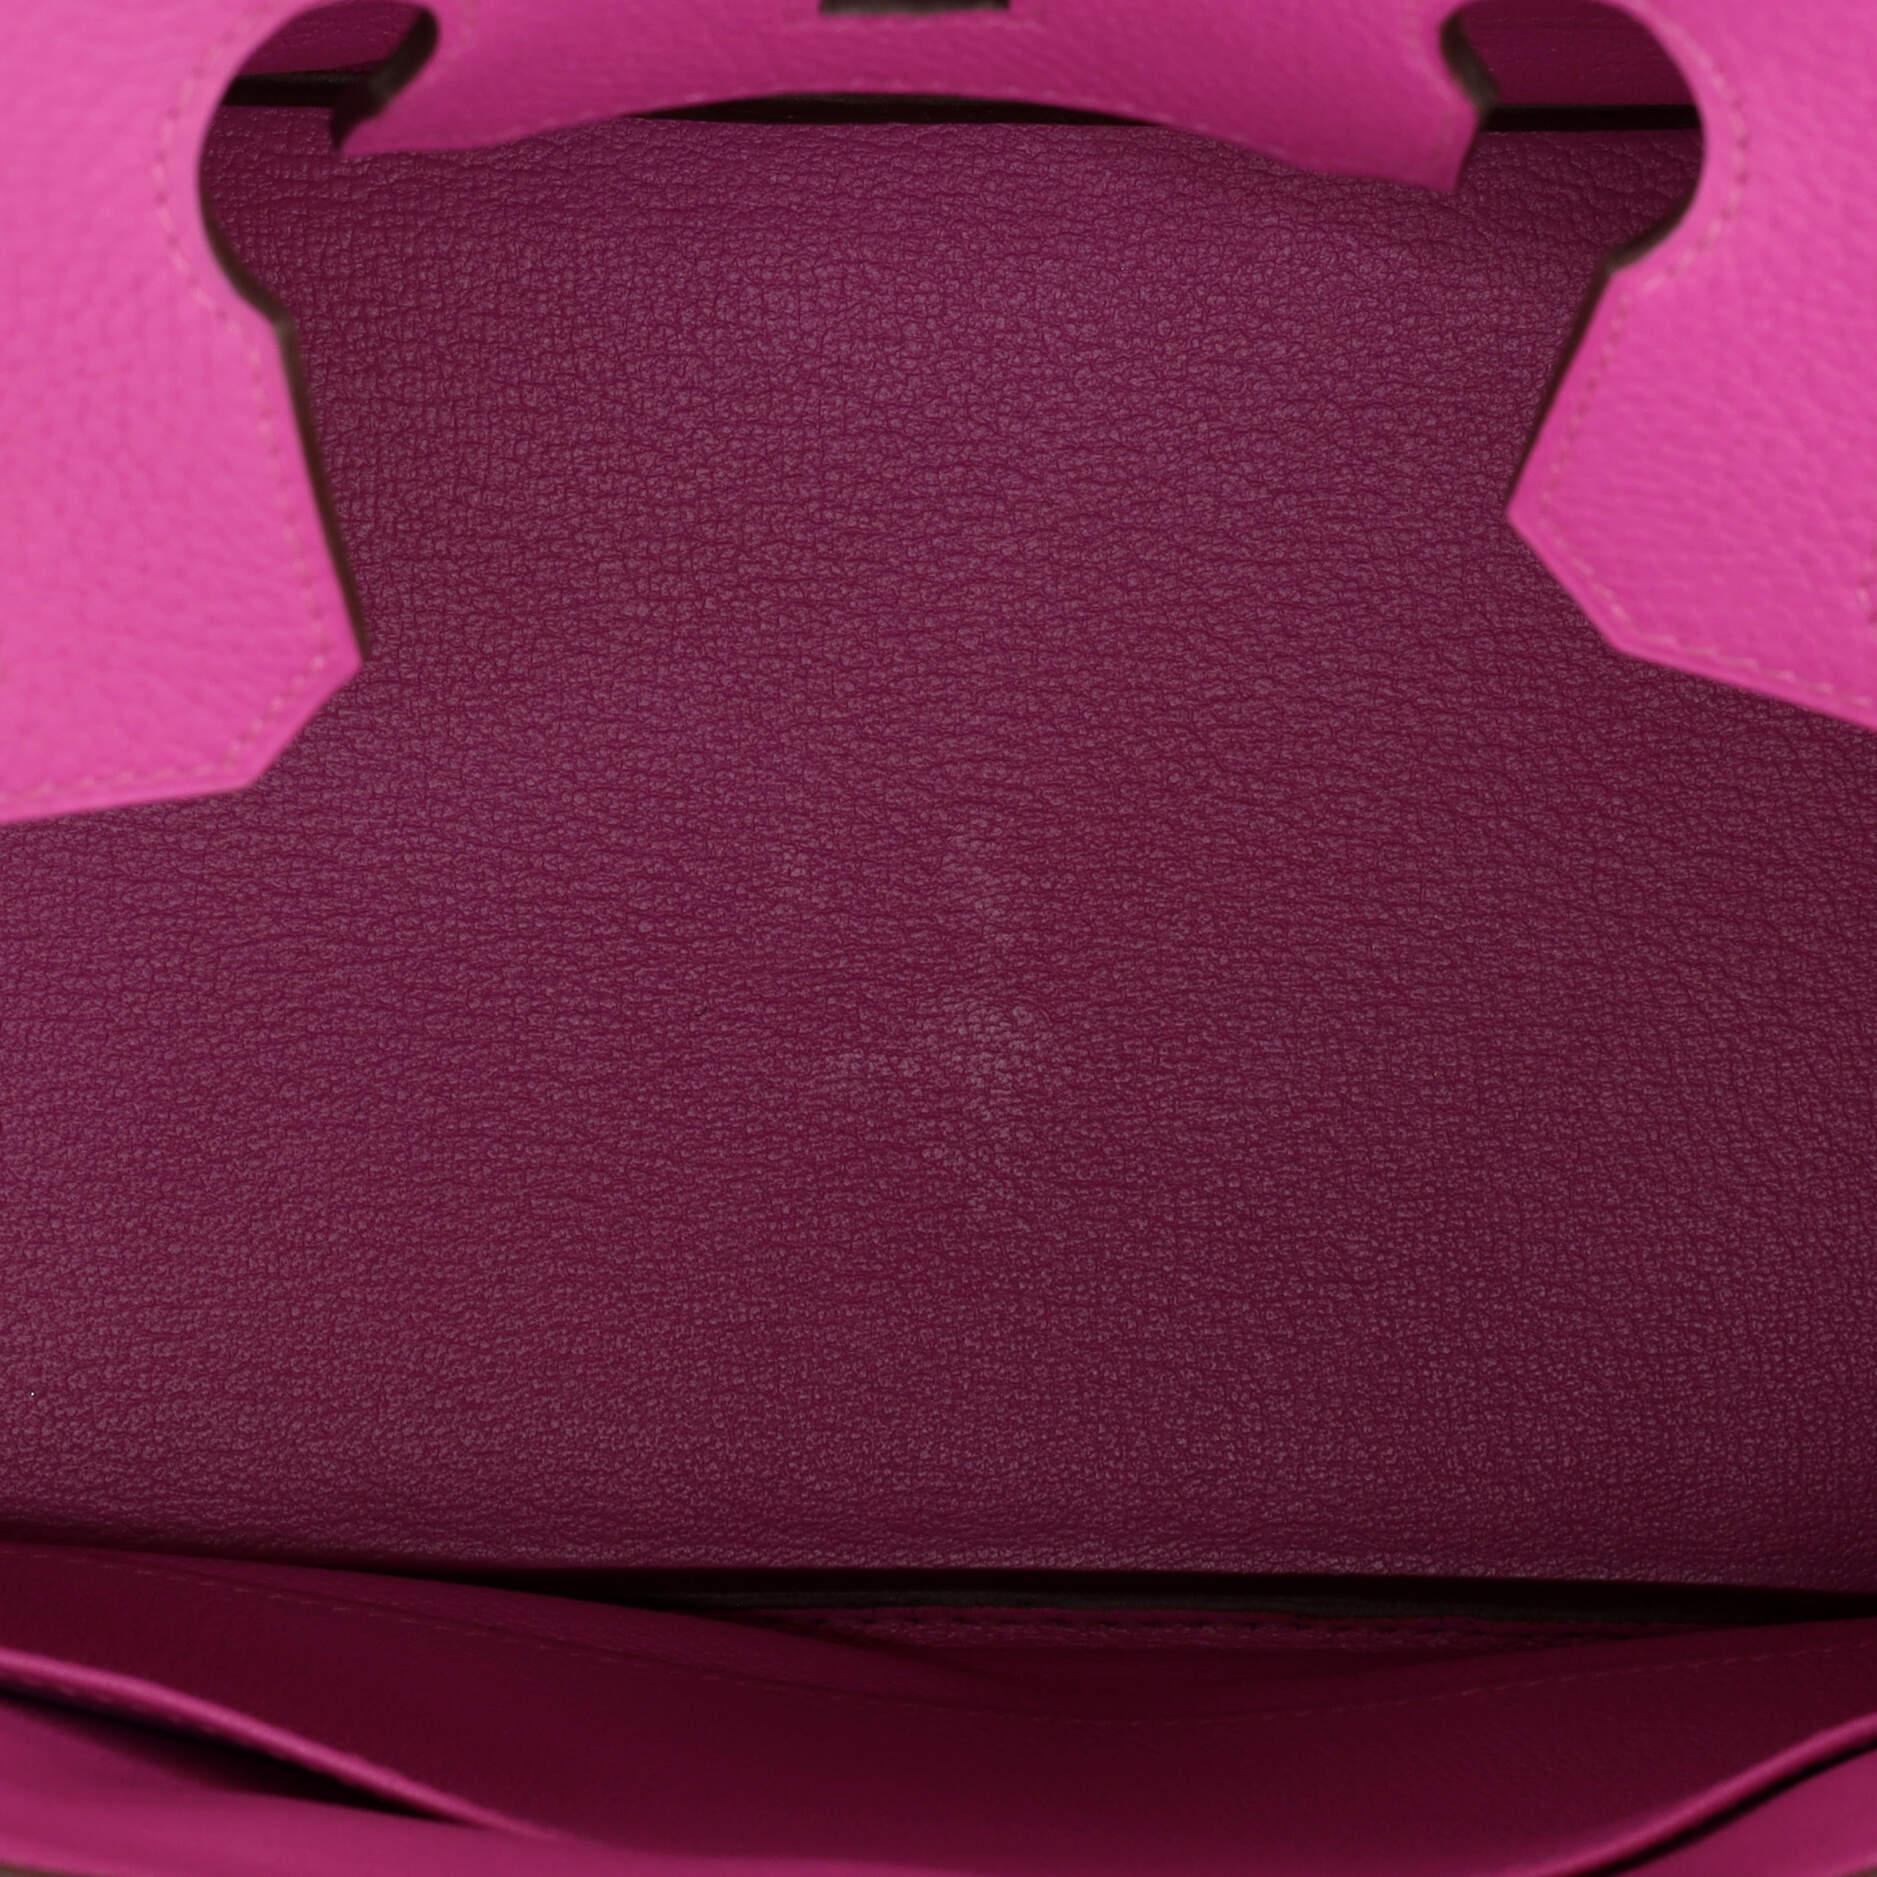 Hermes Birkin Handbag Magnolia Clemence with Palladium Hardware 30 In Good Condition In NY, NY